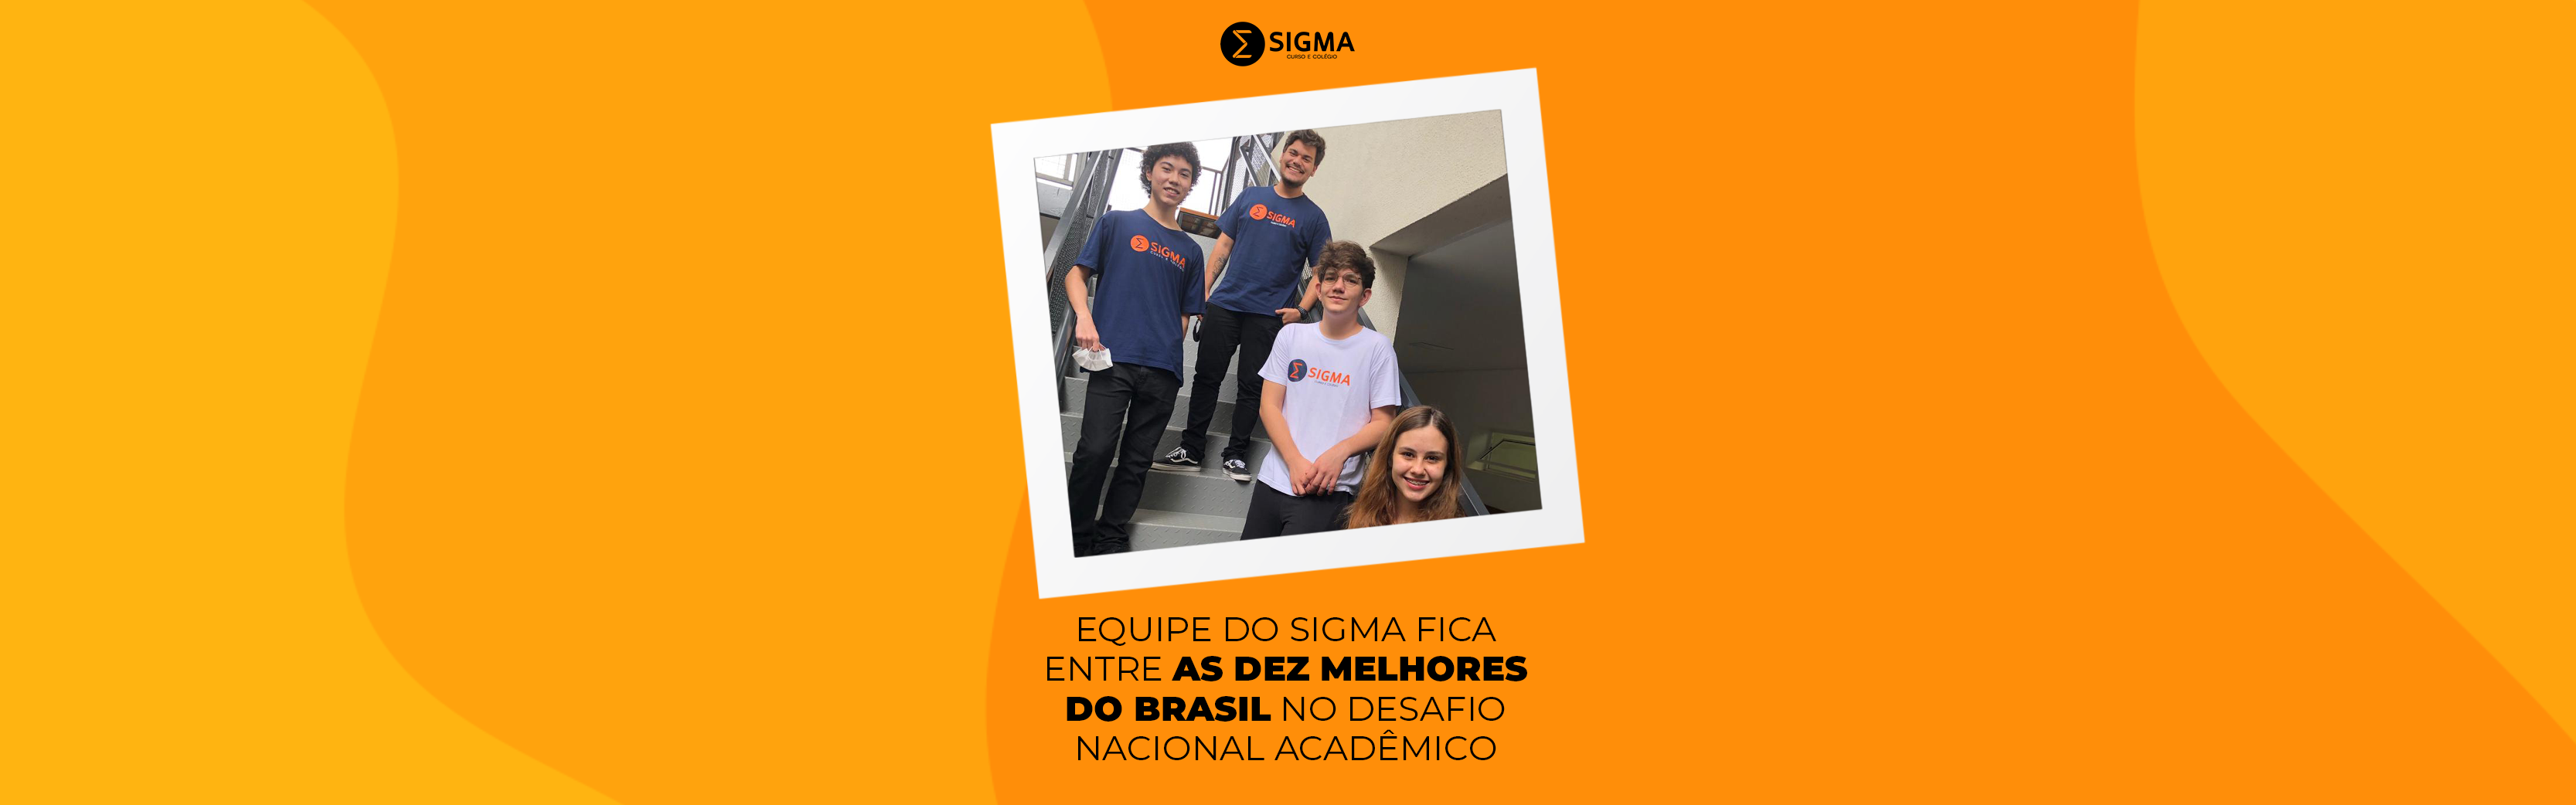 Equipe do Sigma fica entre as dez melhores do Brasil no Desafio Nacional Acadêmico